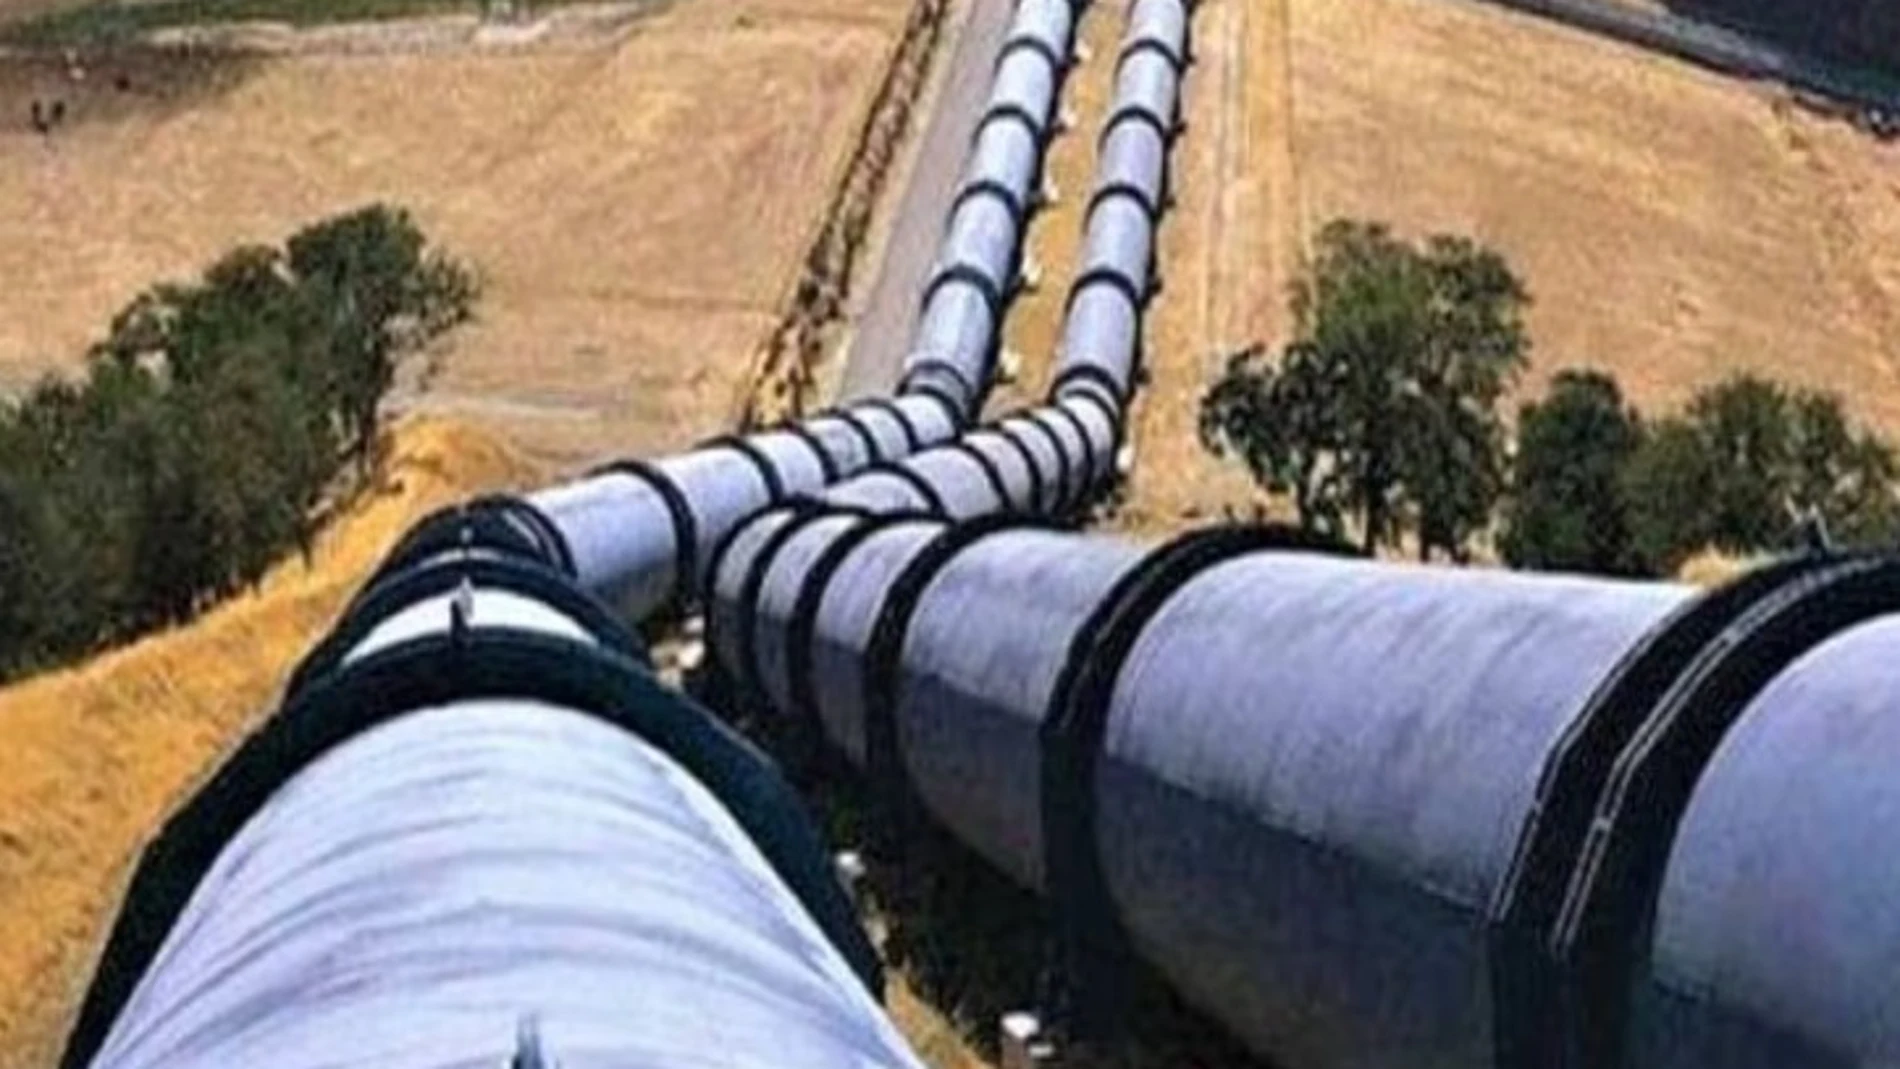 Gasoducto en Marruecos 